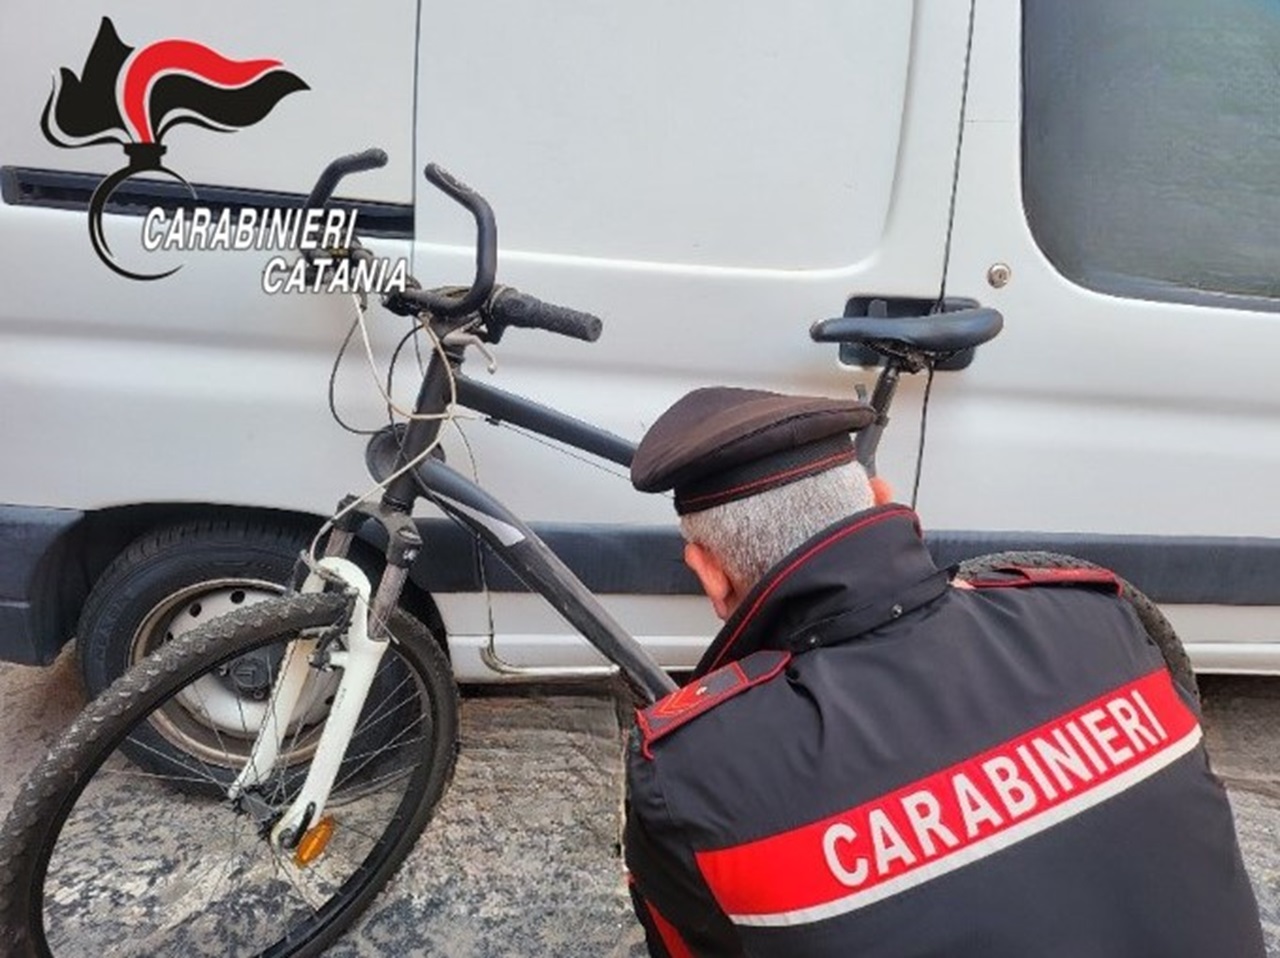 Furto sventato alla stazione di Catania, 40enne arrestato mentre tentava di scassinare un furgone